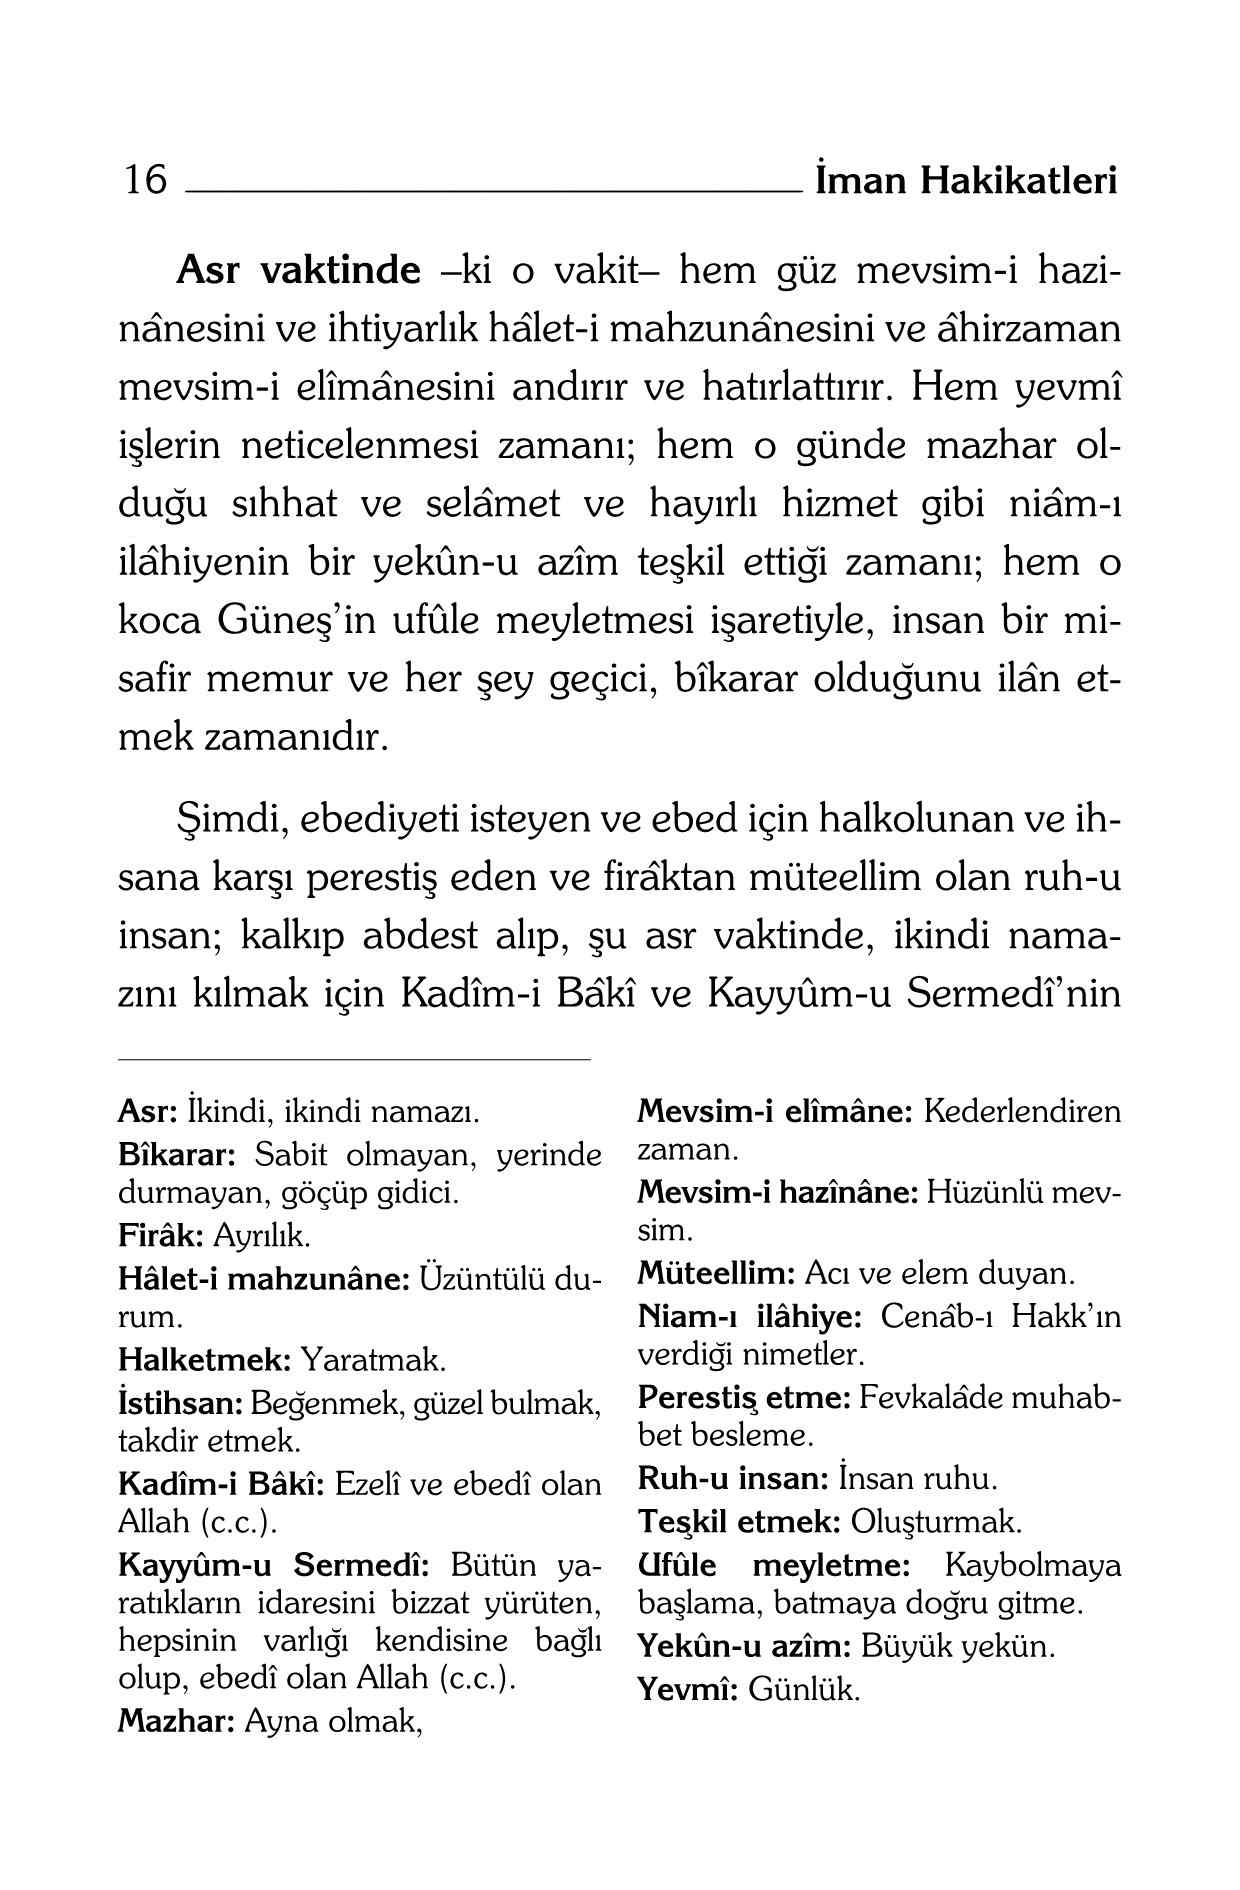 B Said Nursi - Iman Hakikatleri Risalesi (Kelime Aciklamali) - SahdamarY.pdf, 240-Sayfa 